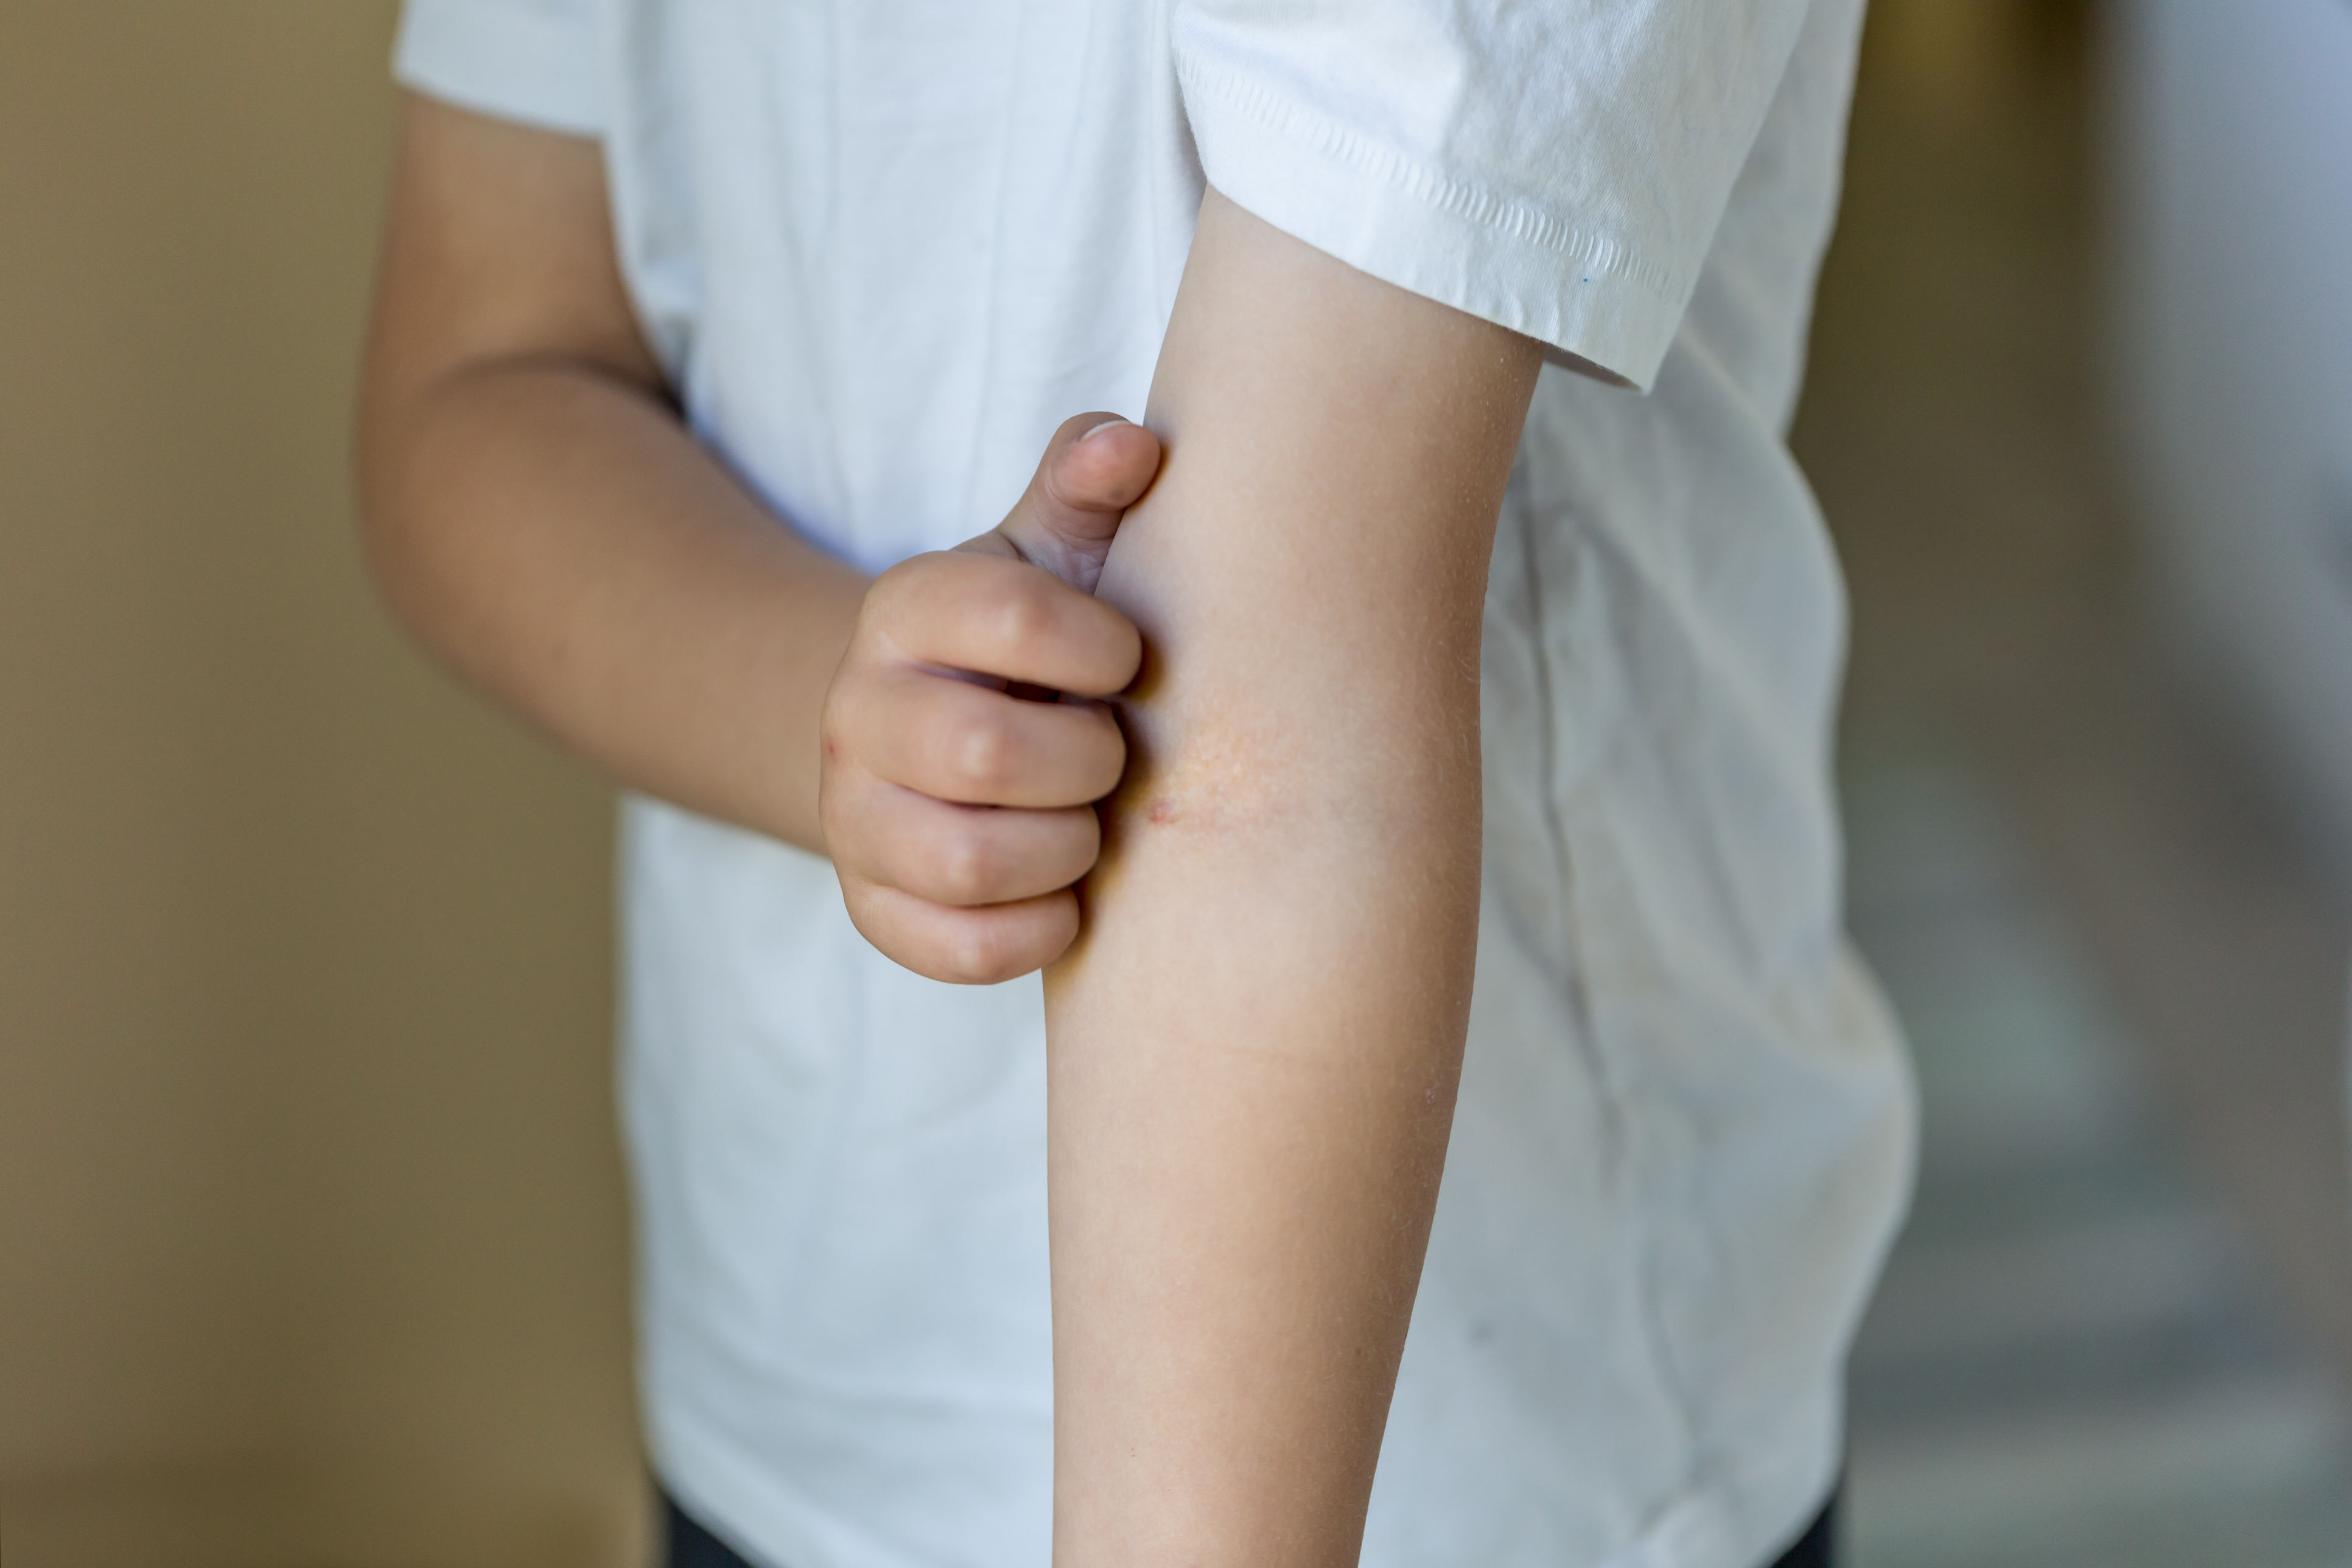 A alergia infantil na pele tende a melhorar durante o crescimento da criança. Entretanto, se não forem tratadas da forma correta, as reações alérgicas podem se agravar, causando problemas mais sérios.